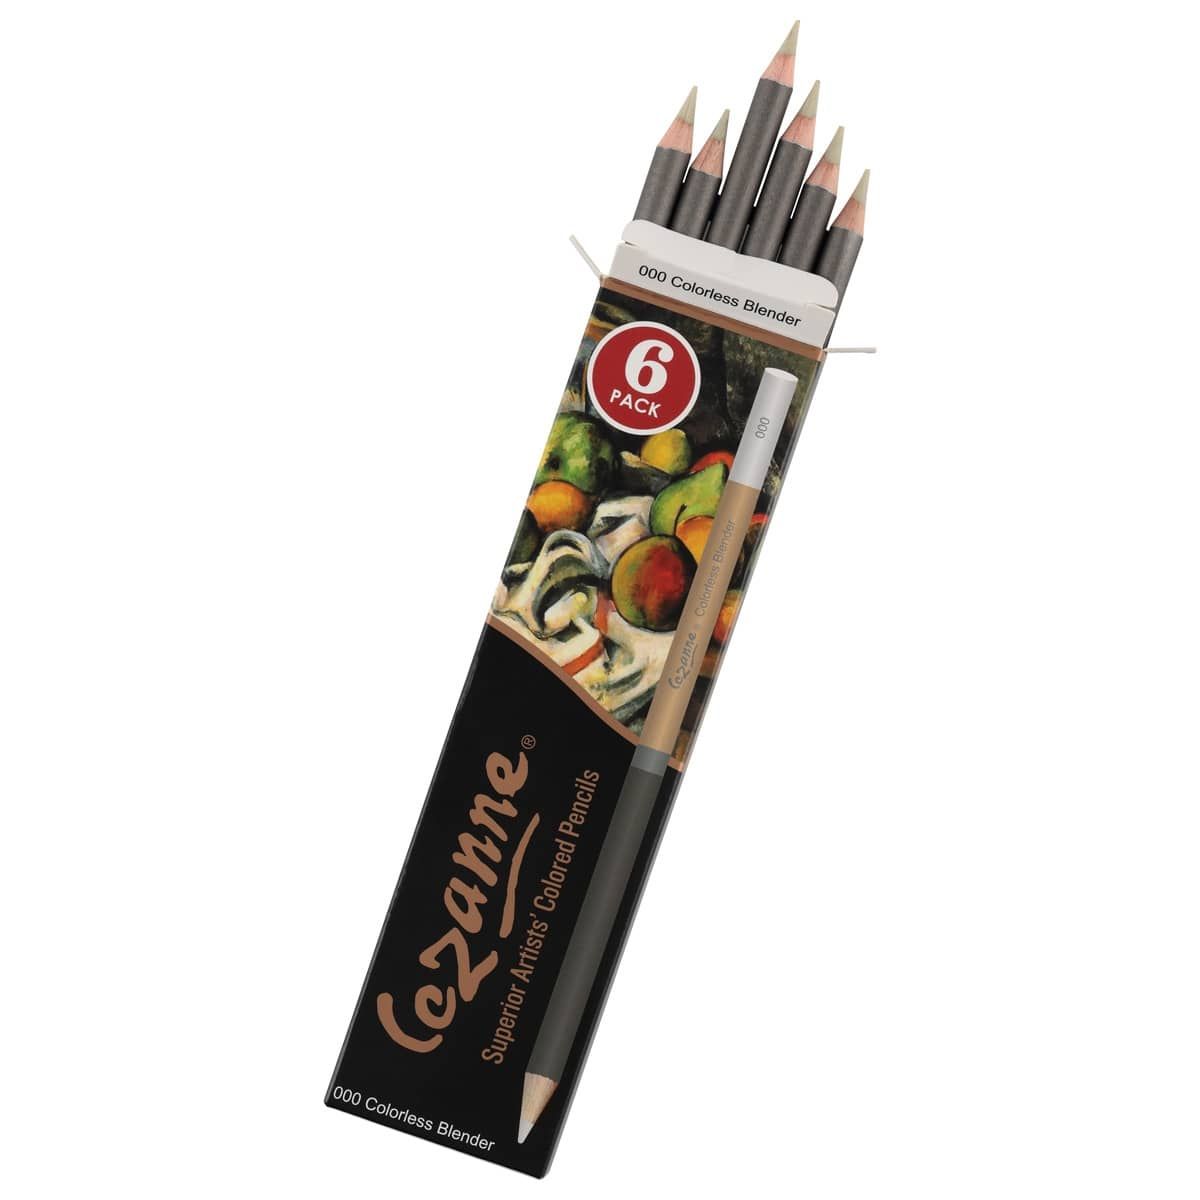 Cezanne Premium Colored Pencil Sets – Jerrys Artist Outlet